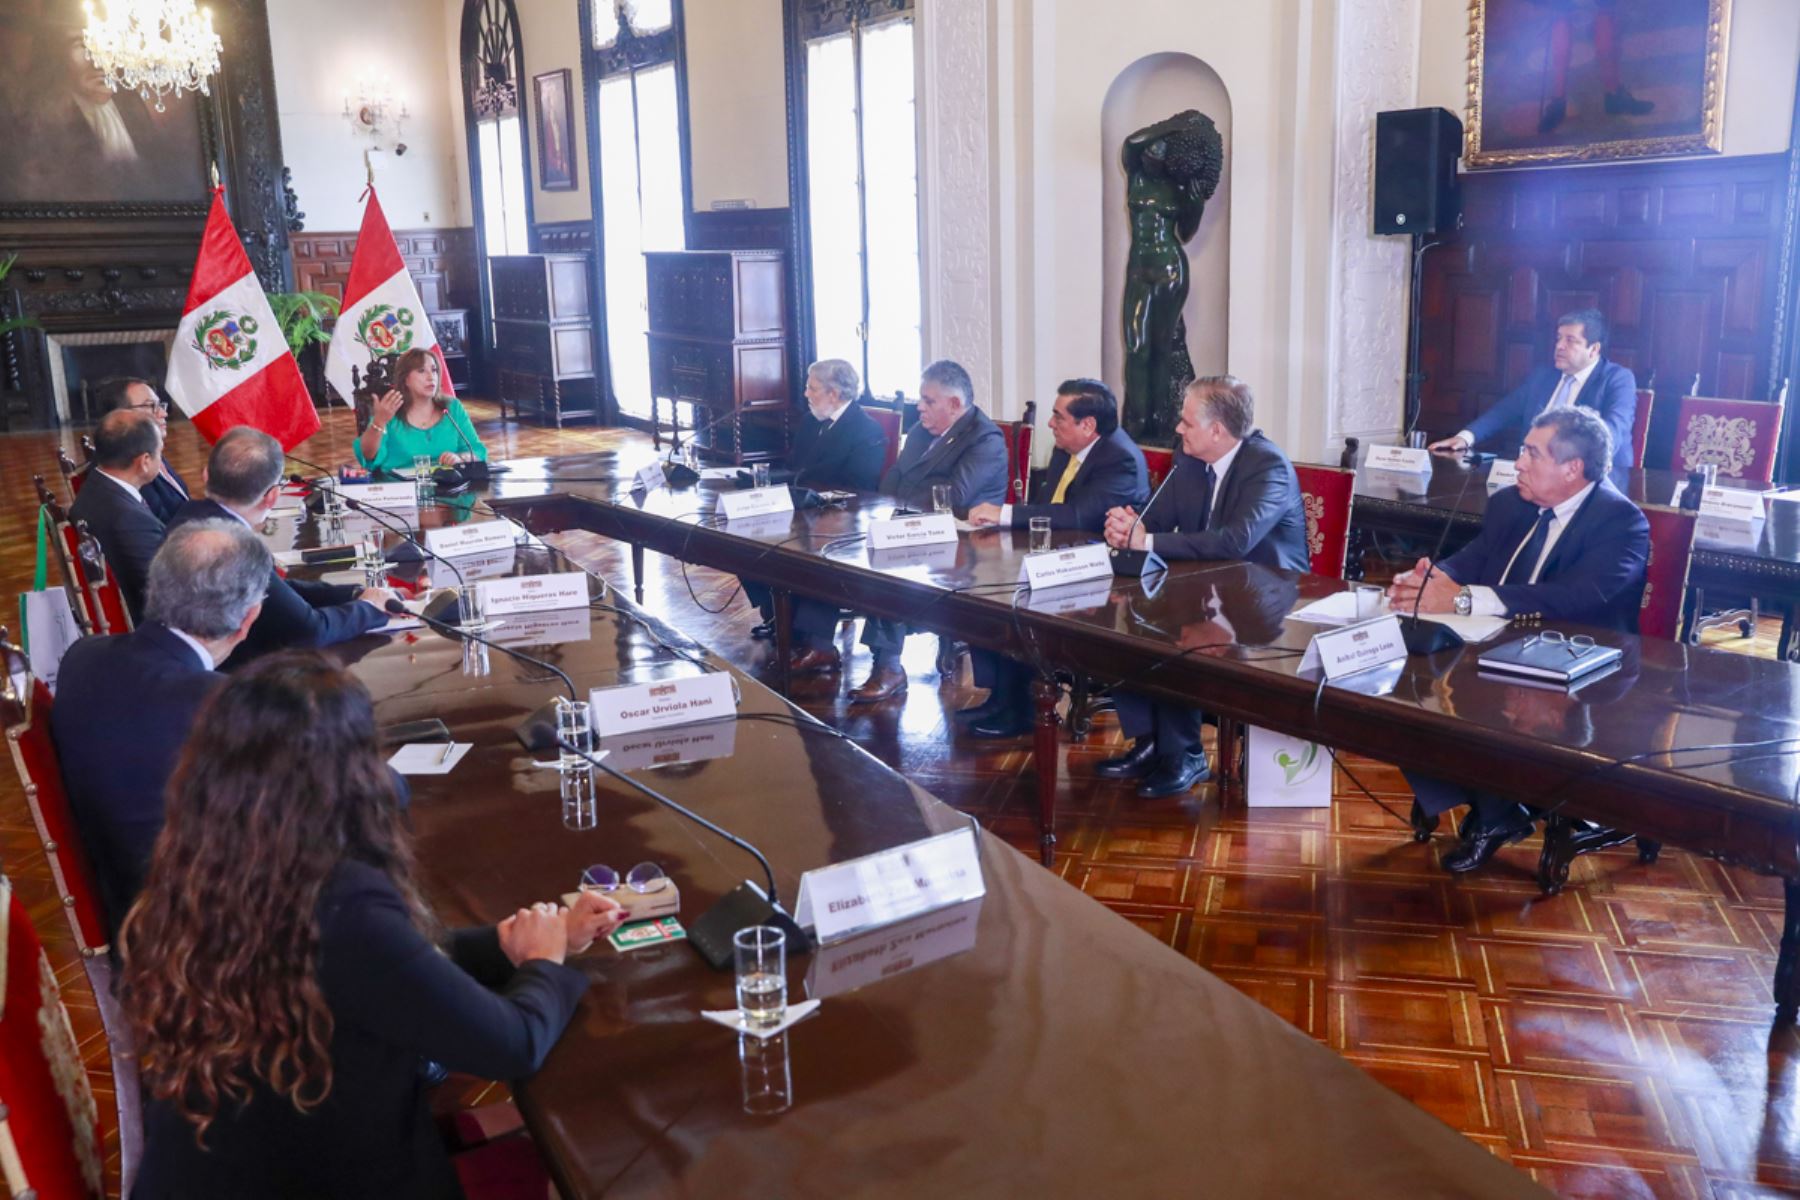 Presidenta Dina Boluarte lideró instalación de Comisión Consultiva que brindará orientación en materia constitucional

Foto: ANDINA/Prensa Presidencia